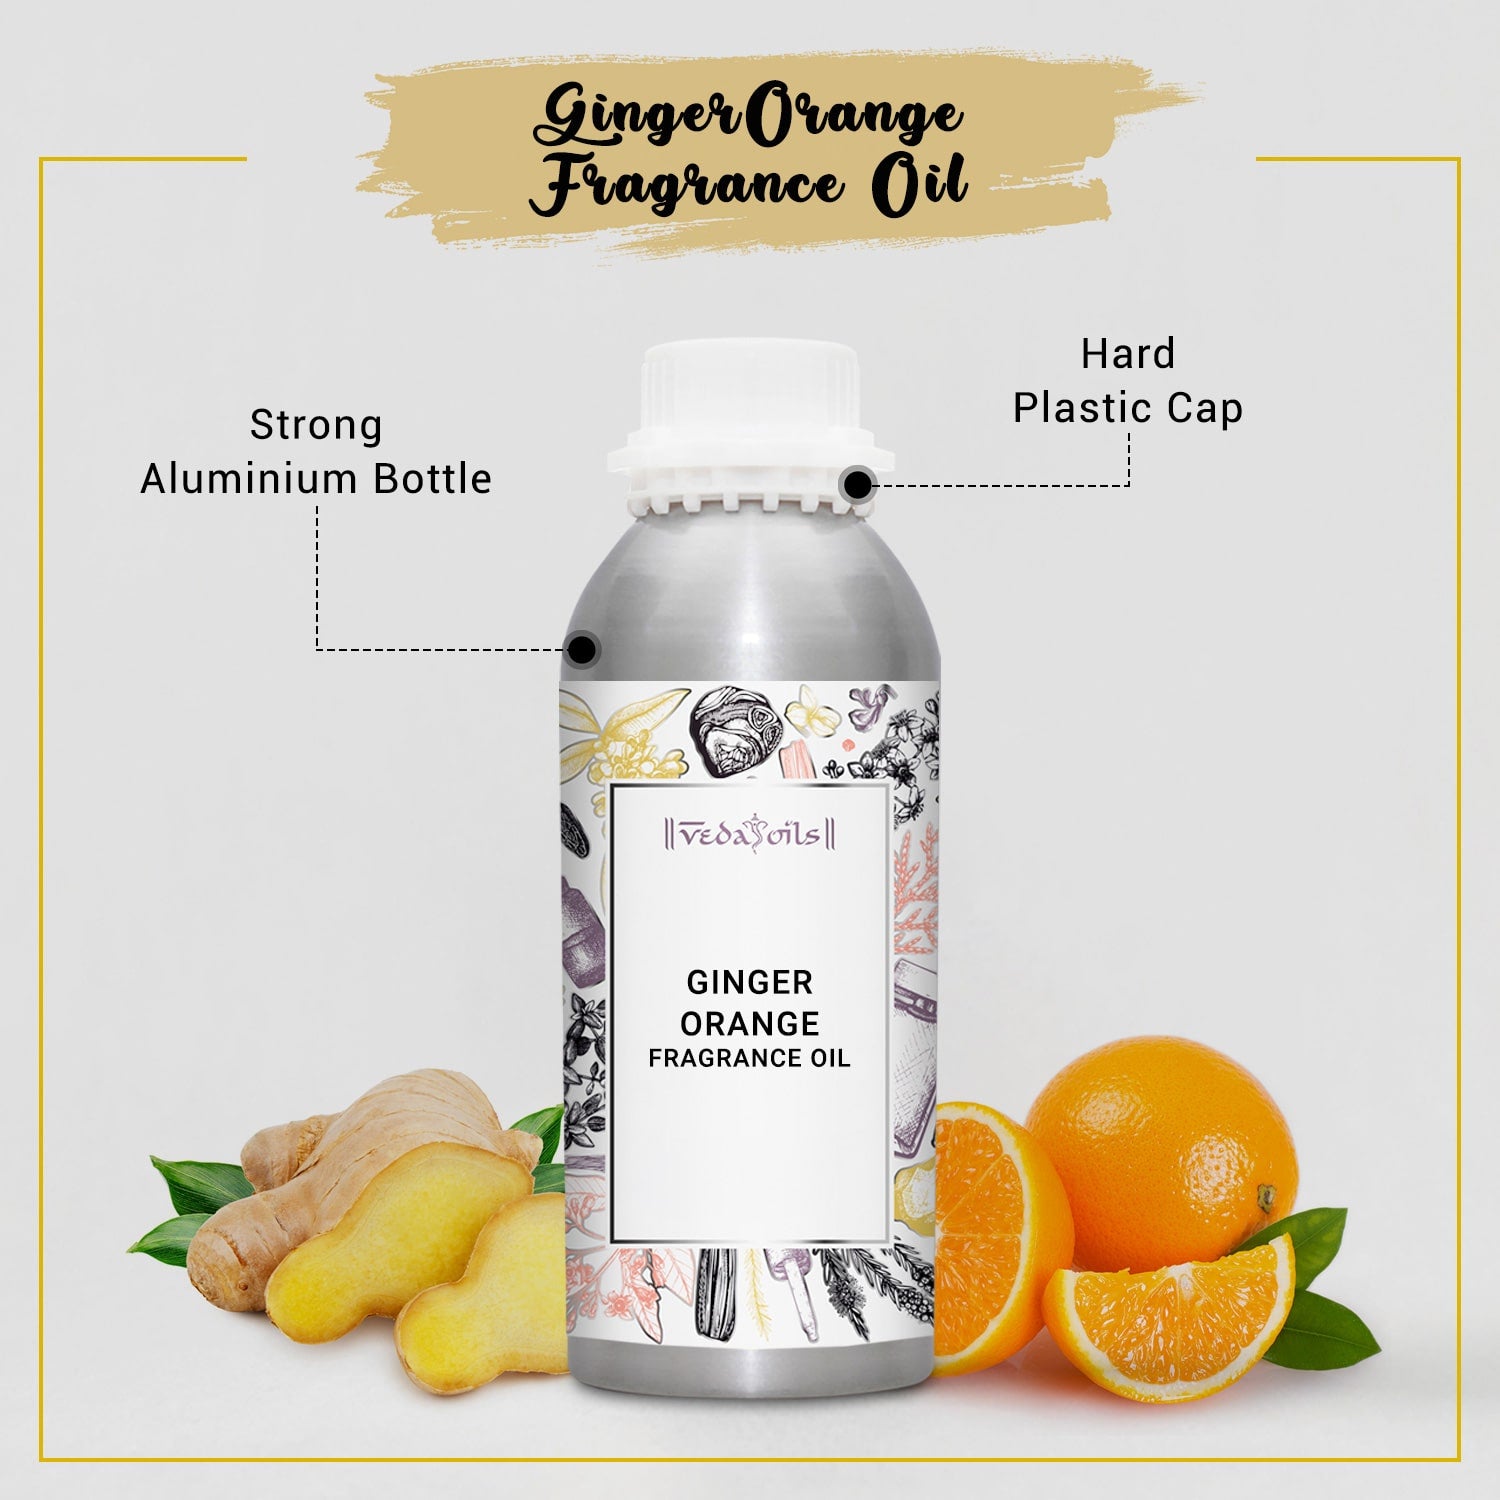 Ginger Orange Fragrance Oil